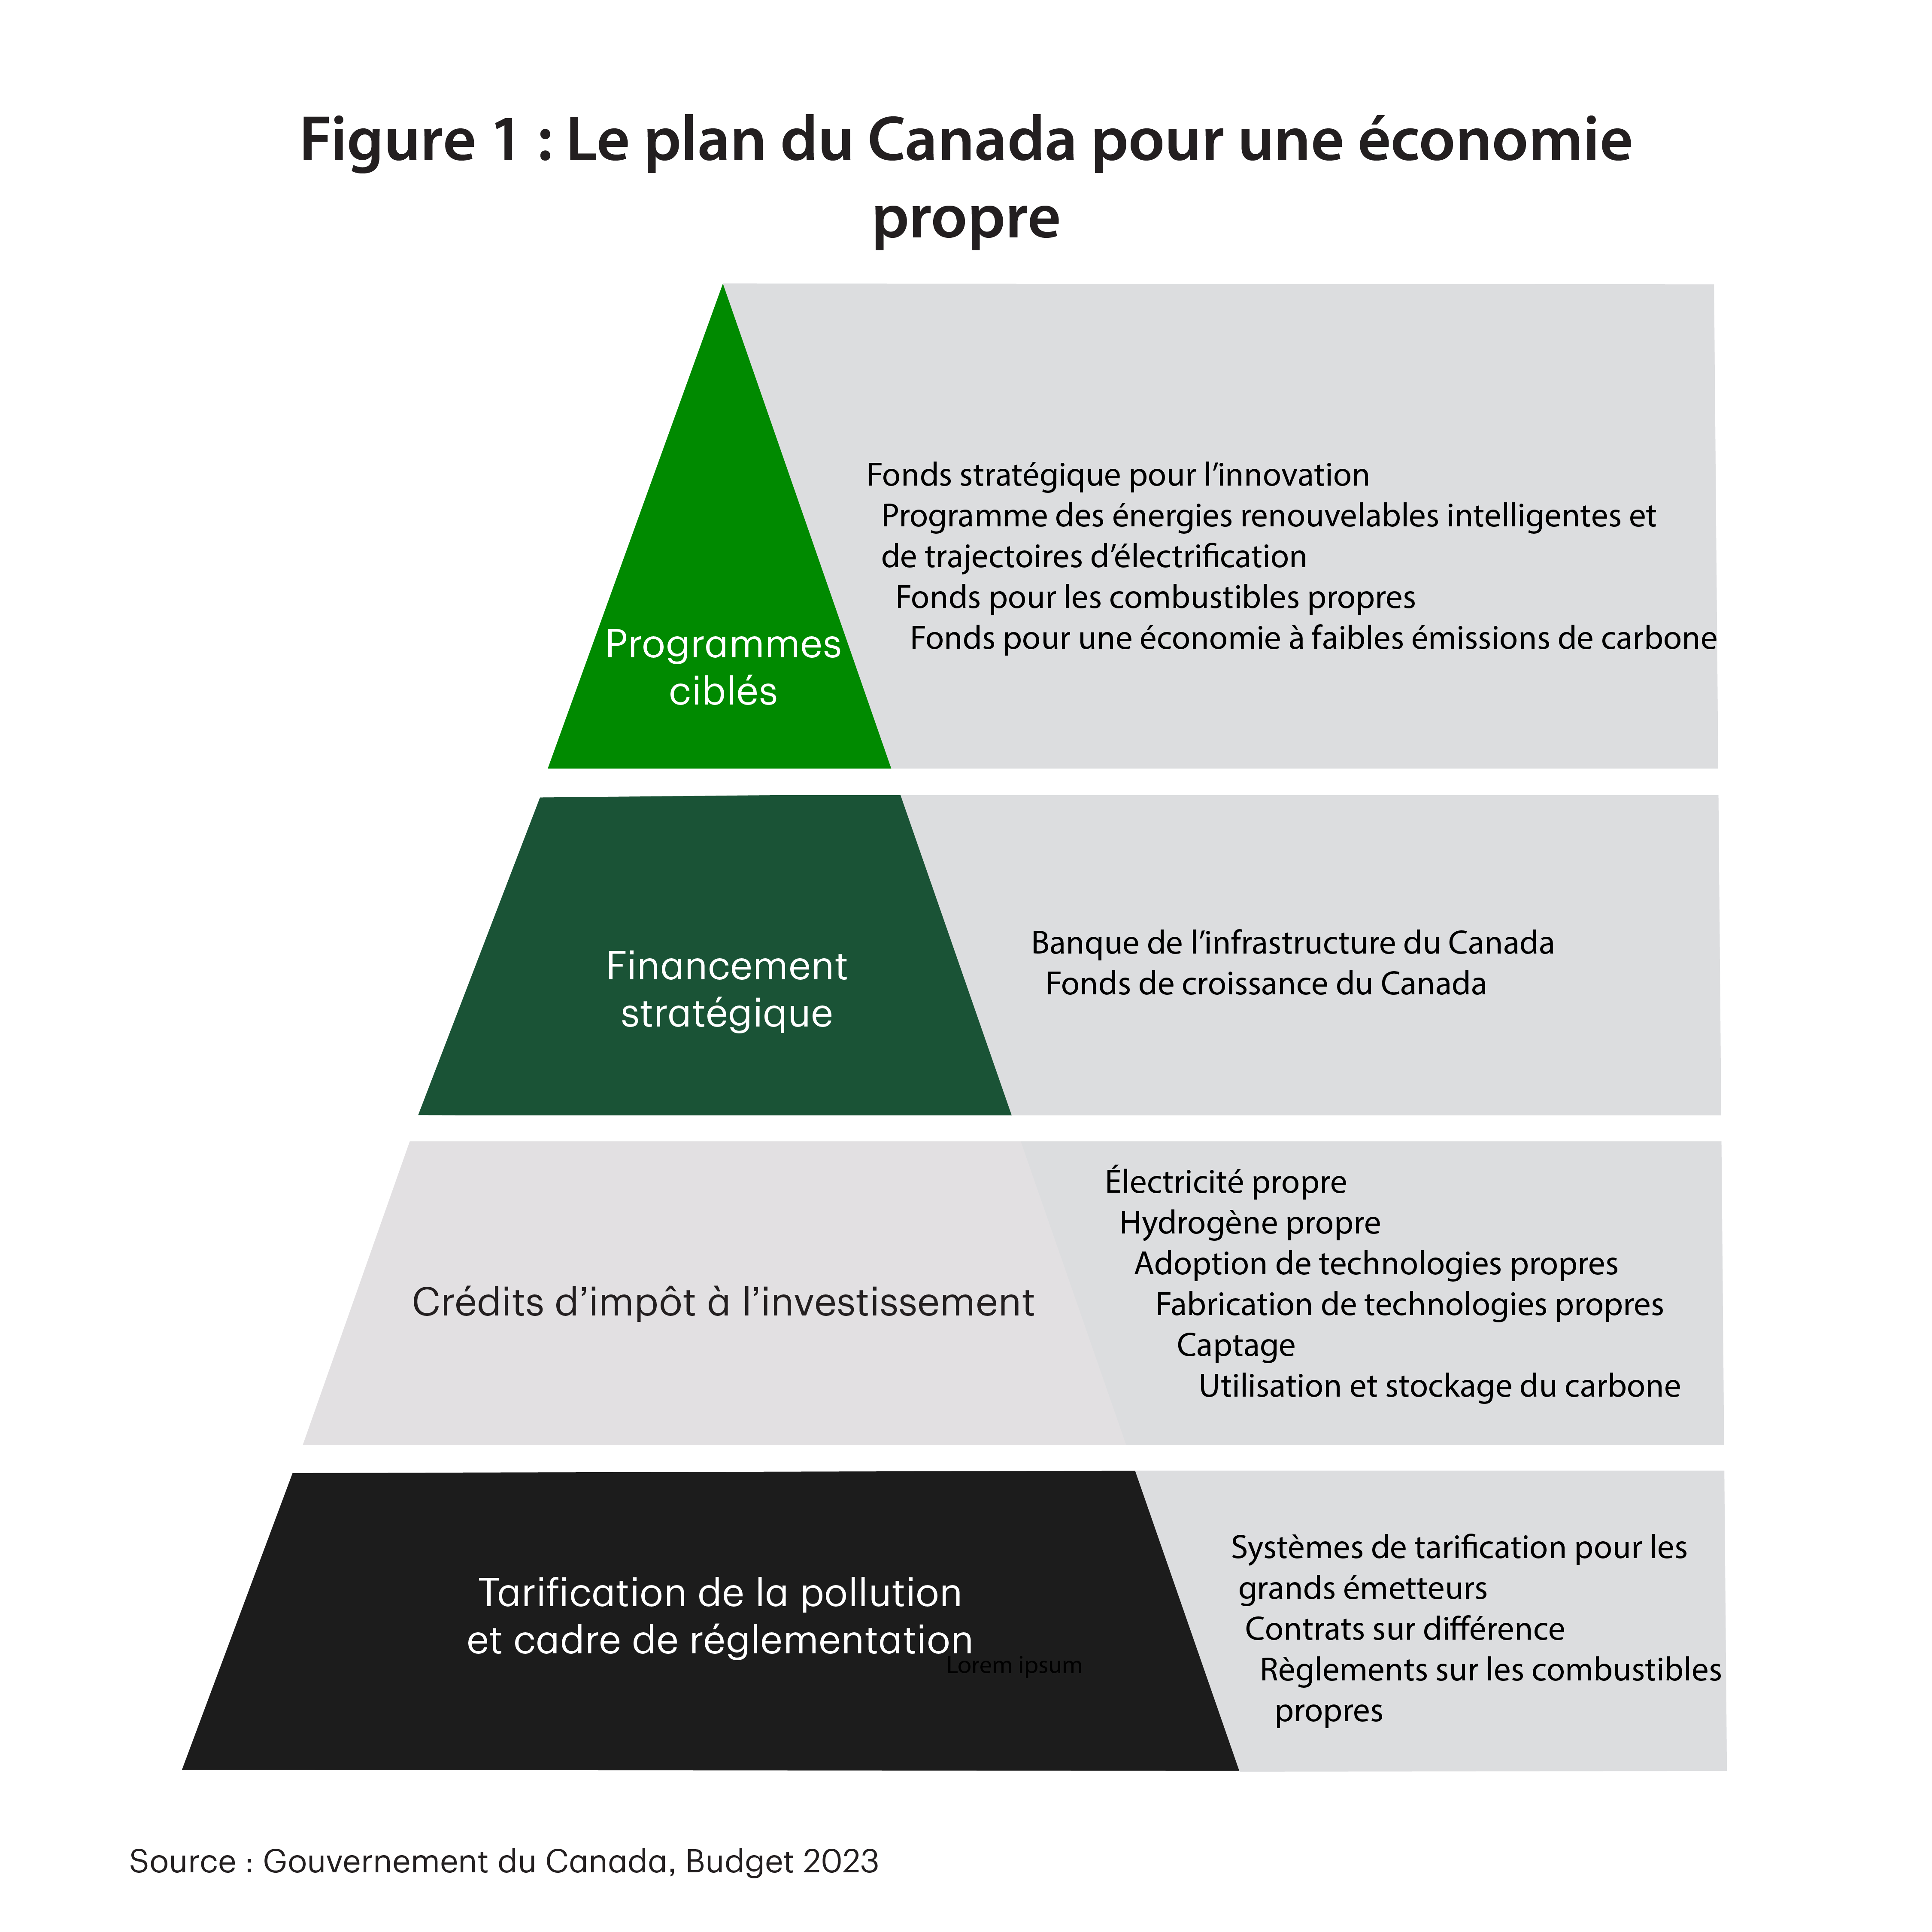 La figure 1 est une représentation graphique du cadre de politique sur le changement climatique du Canada sous forme de pyramide articulée autour de quatre éléments. La pyramide, de la base au sommet, comprend les éléments suivants : Tarification de la pollution et cadre de réglementation; Crédits d’impôt à l’investissement, ce qui comprend l’électricité propre, l’hydrogène propre et le CUSC; Financement stratégique, ce qui comprend la Banque de l’infrastructure du Canada et le Fonds de croissance du Canada; et Programmes ciblés, ce qui comprend le Fonds stratégique pour l’innovation et le Fonds pour des combustibles propres.